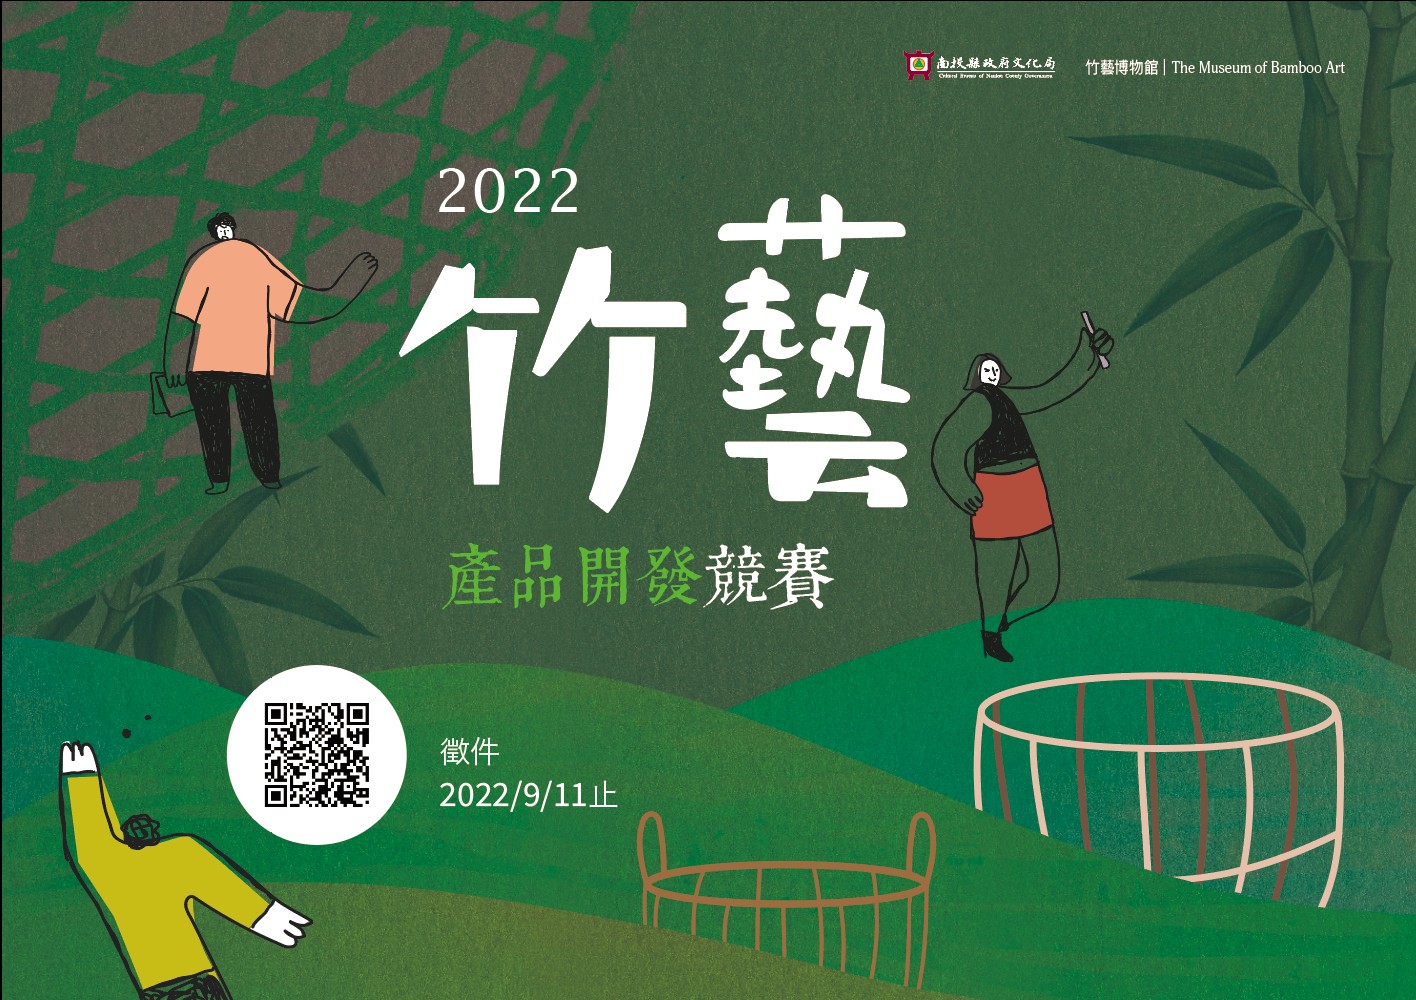 2022竹藝產品開發競賽 海報